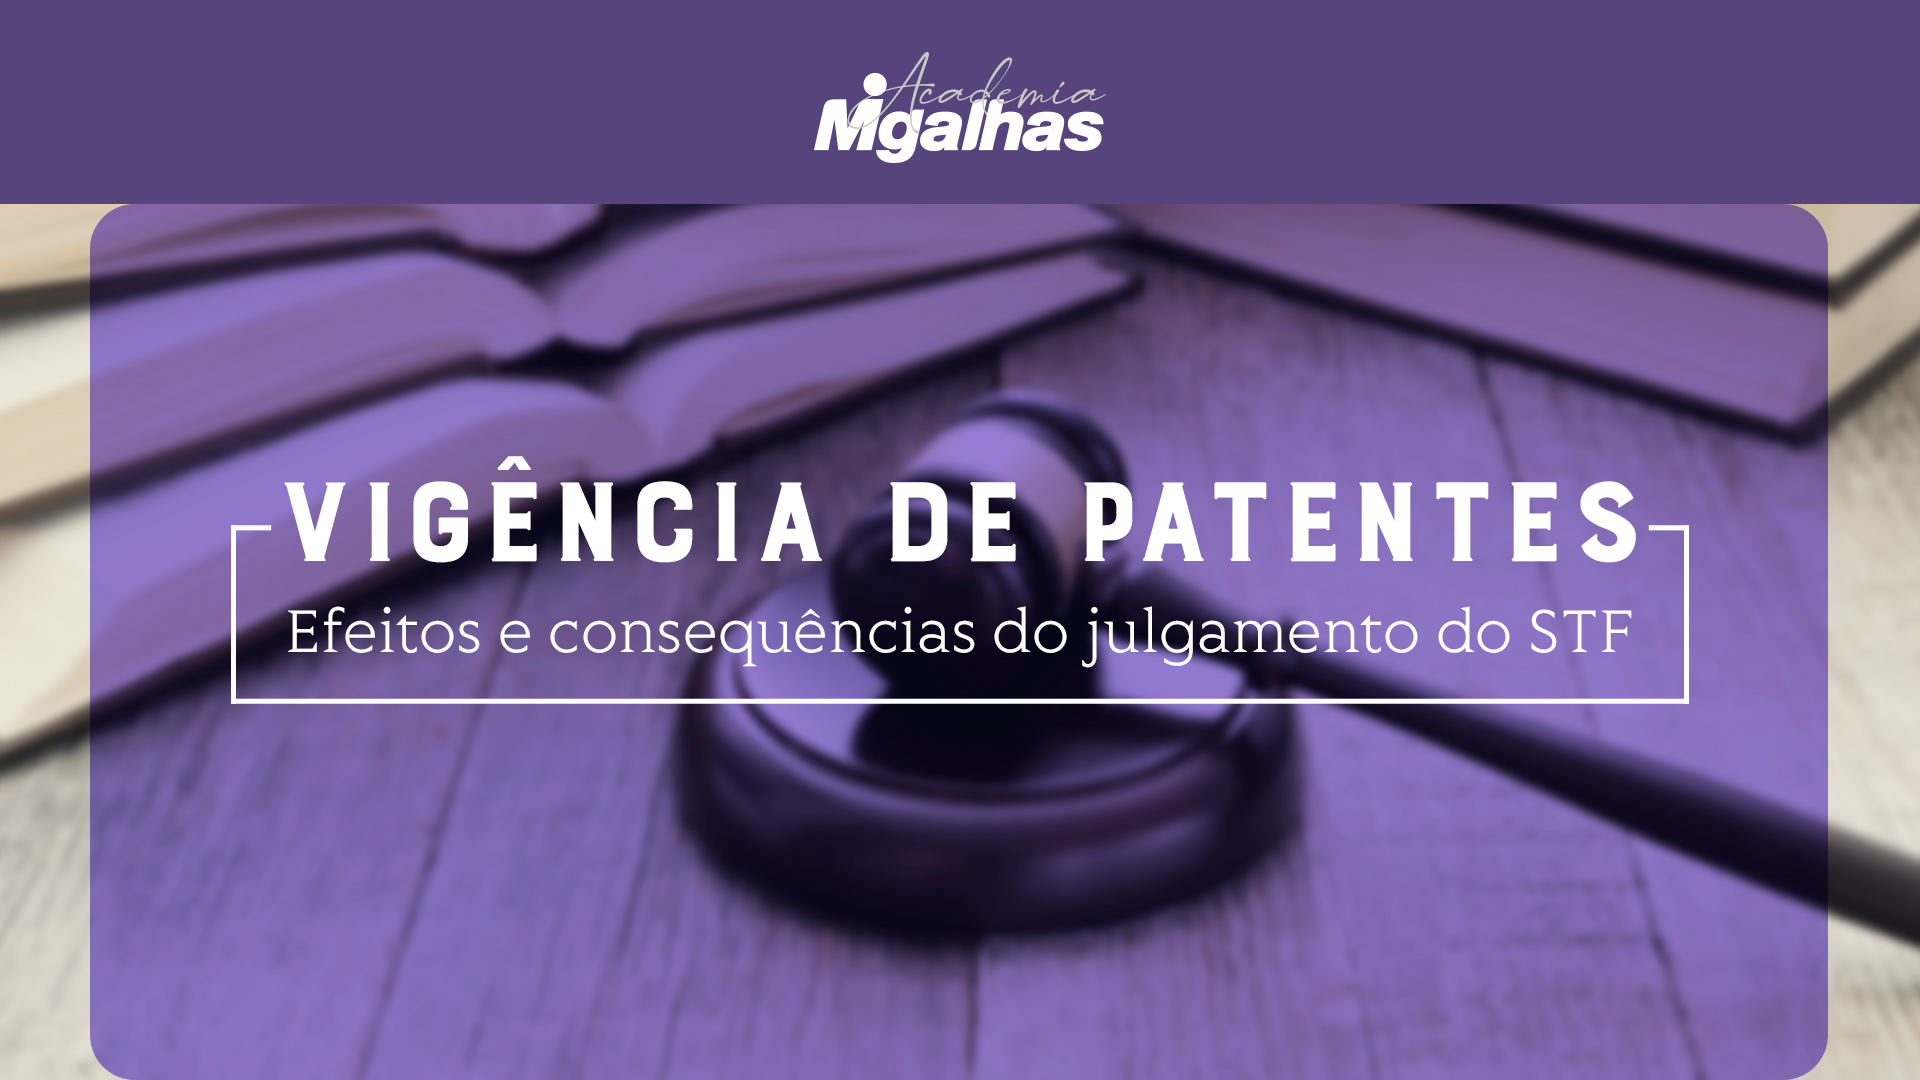 Vigência de patentes - Efeitos e consequências do julgamento do STF